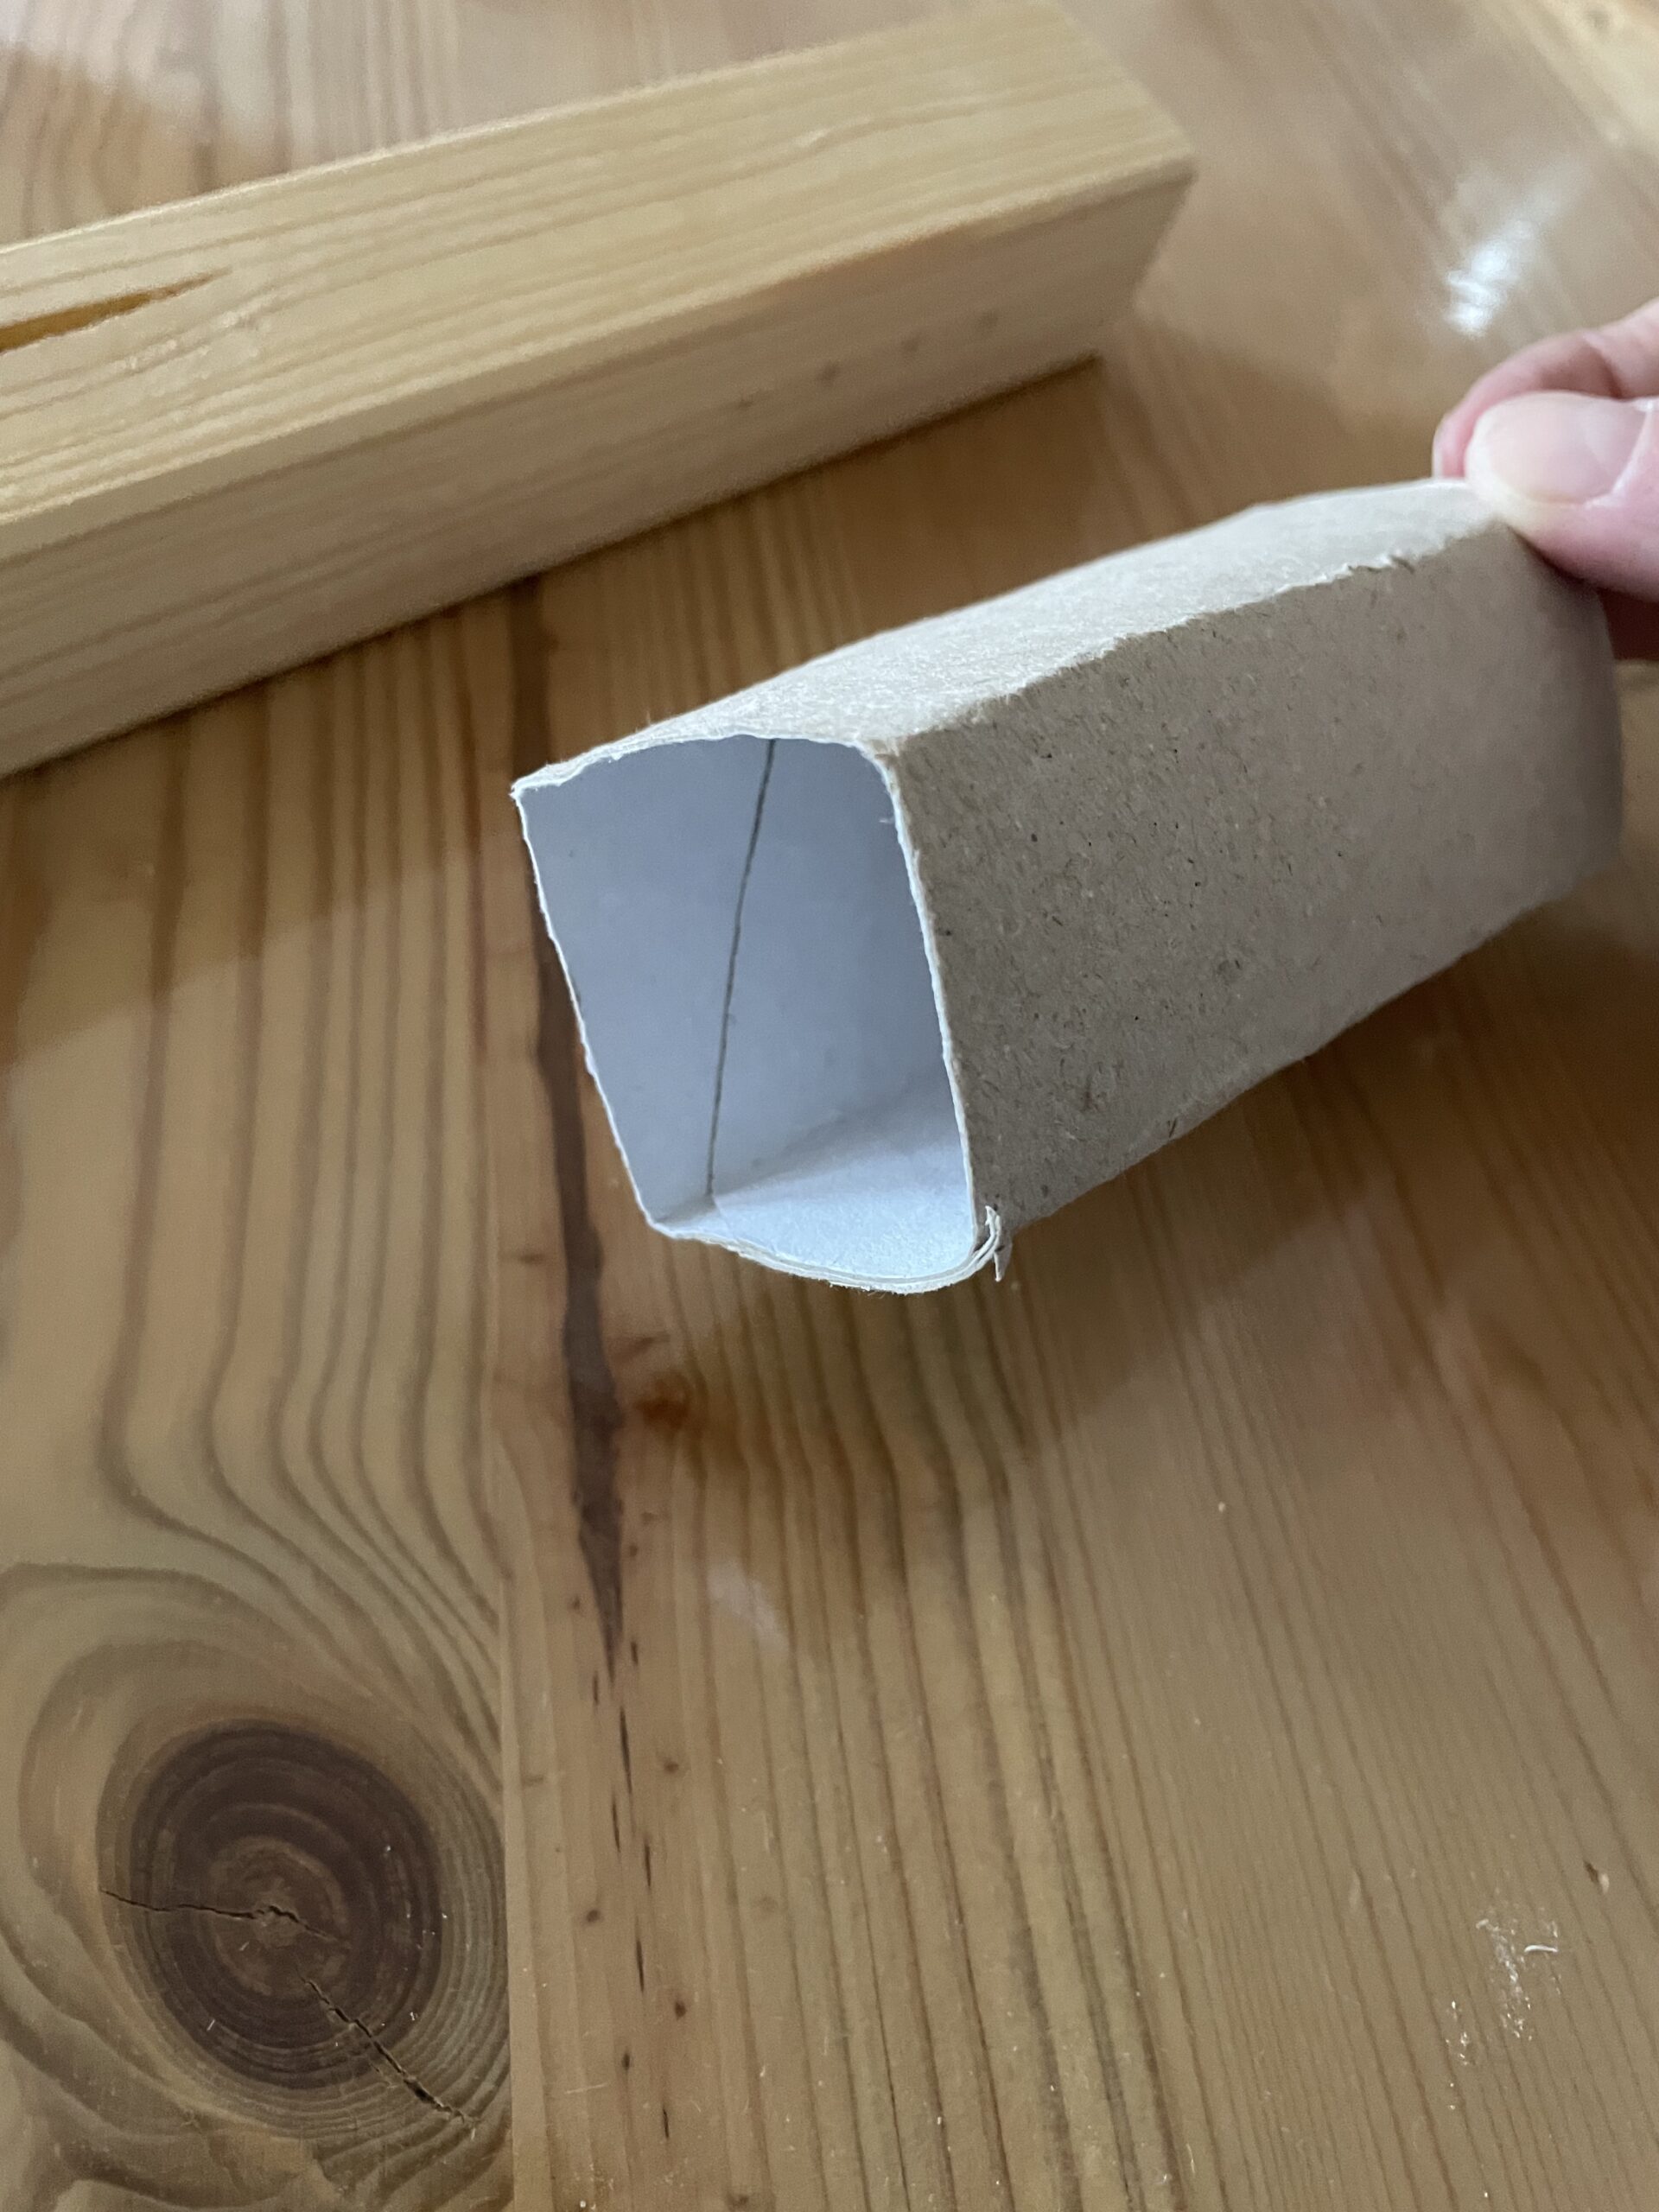 2. Bild zum Schritt 3 für das Bastel- und DIY-Abenteuer für Kinder: 'Drückt die Papprolle an die Holzkante und biegt die Rolle,...'